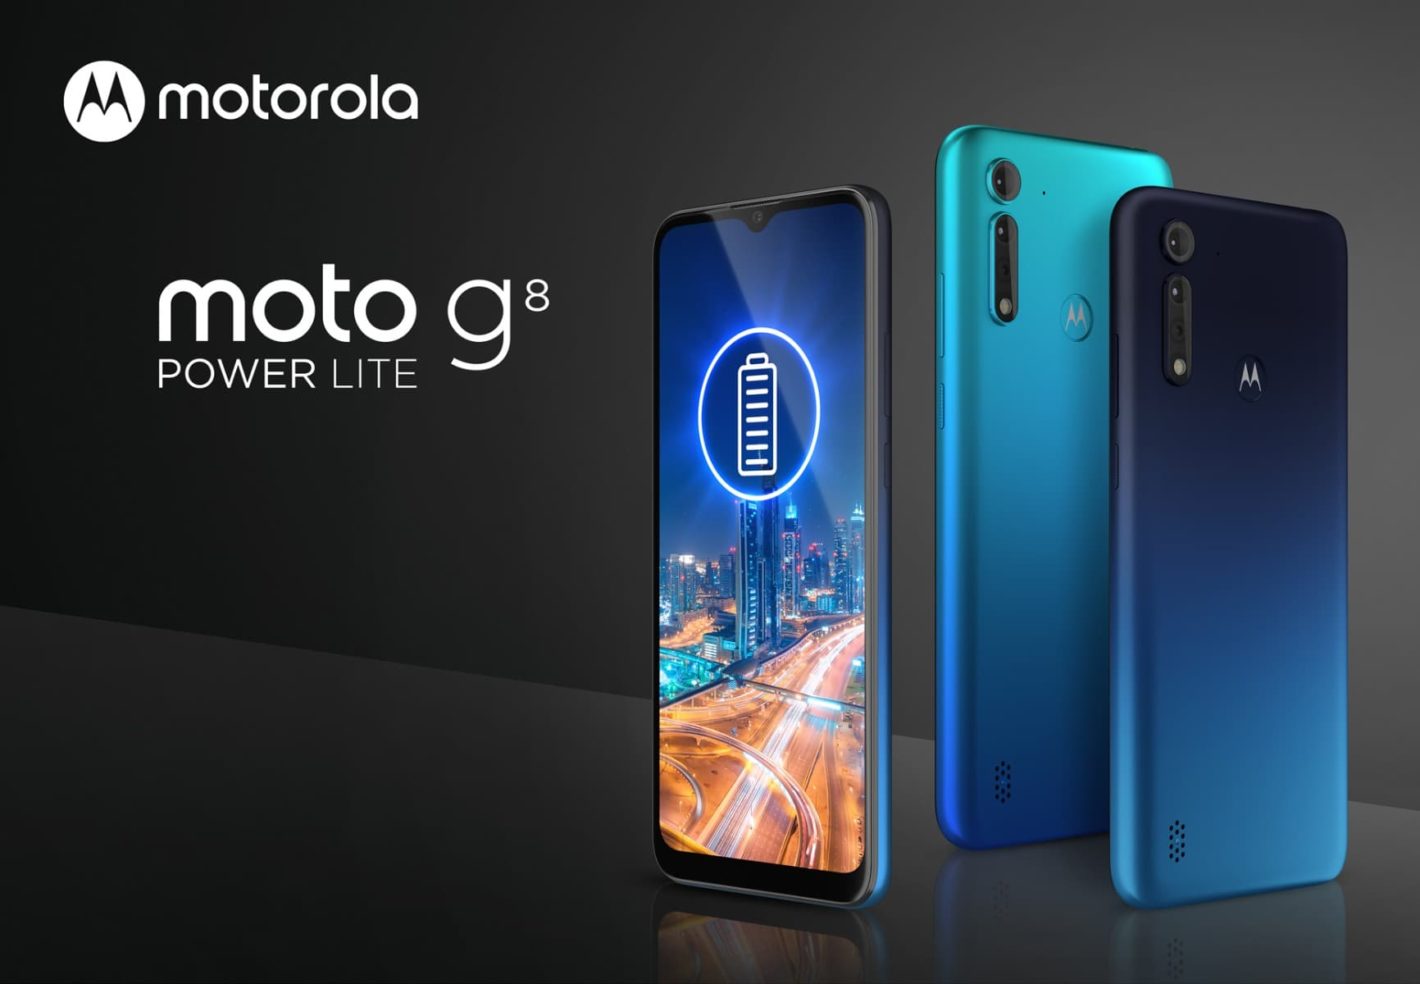 Motorola Moto G8 Power Lite ufficiale: caratteristiche e prezzo thumbnail